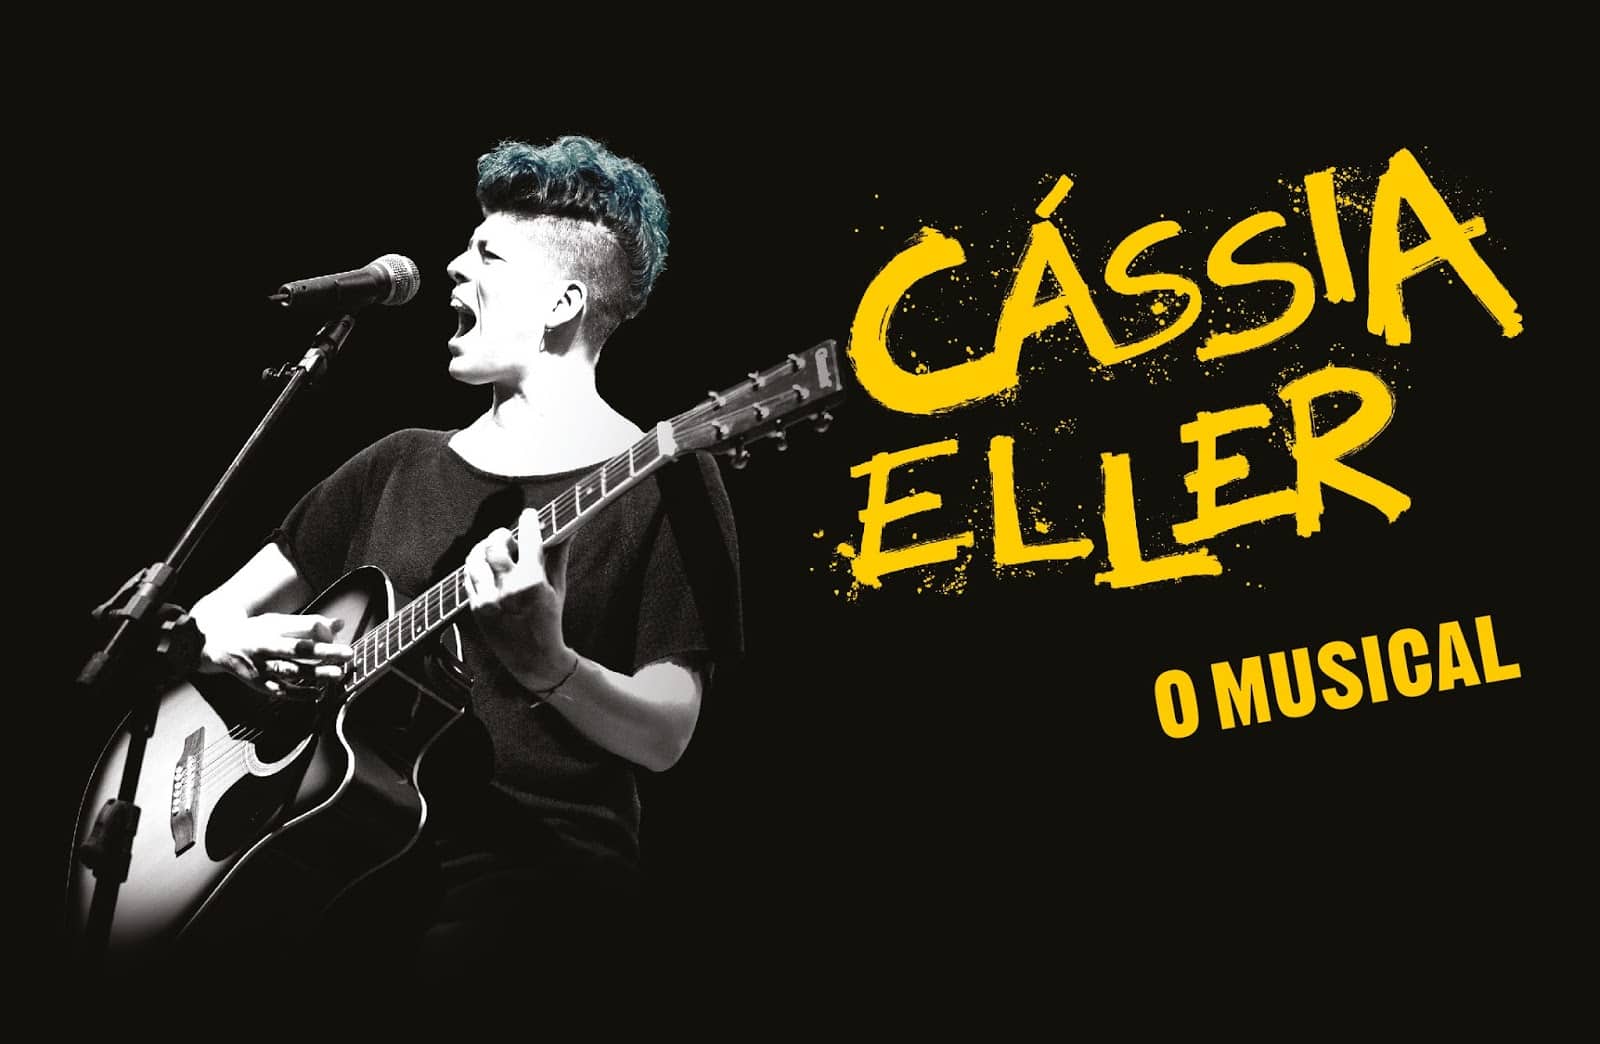 Musical sobre Cássia Eller reestreia no Rio - Diário do Rio de Janeiro